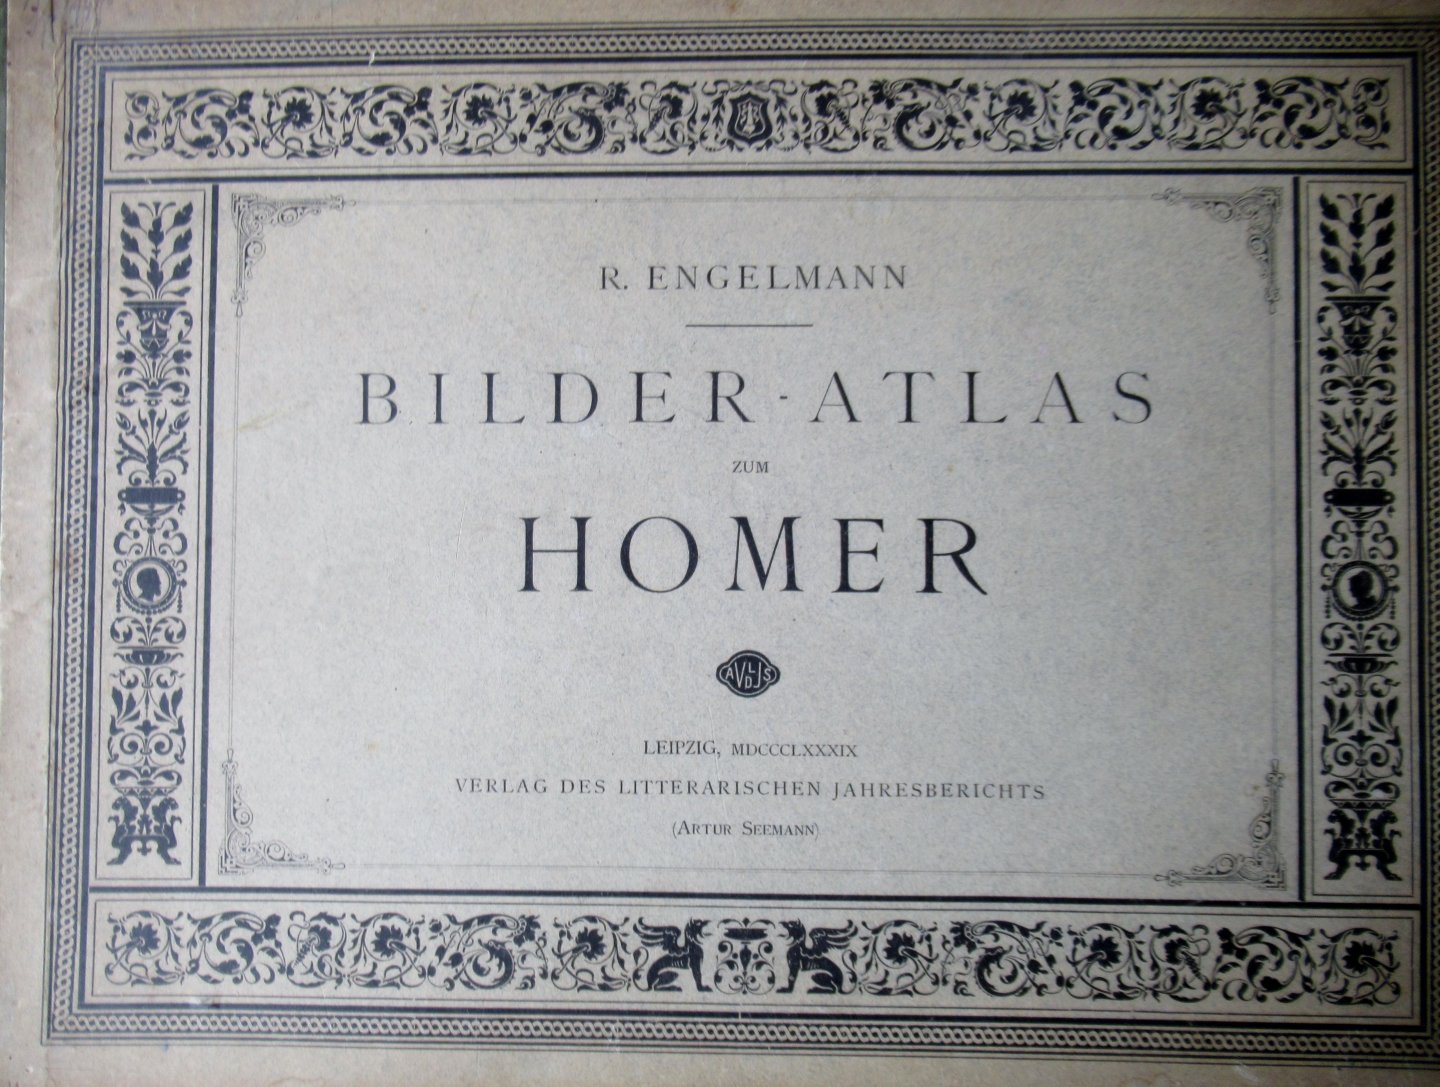 Engelmann, R - Bilder-atlas Homer. Sechsundreissig tafeln mit erläuterndem texte